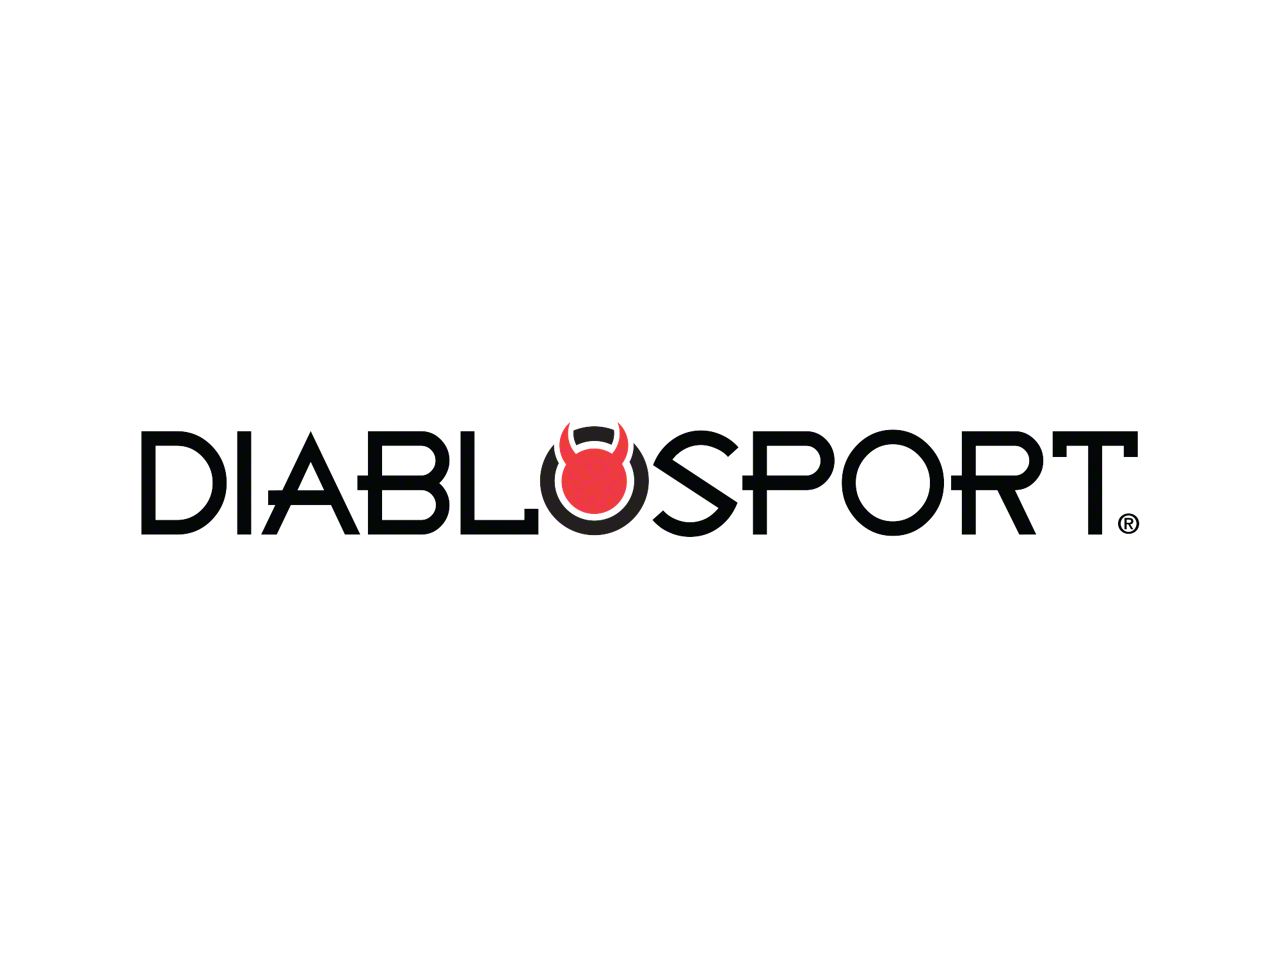 DiabloSport, Inc